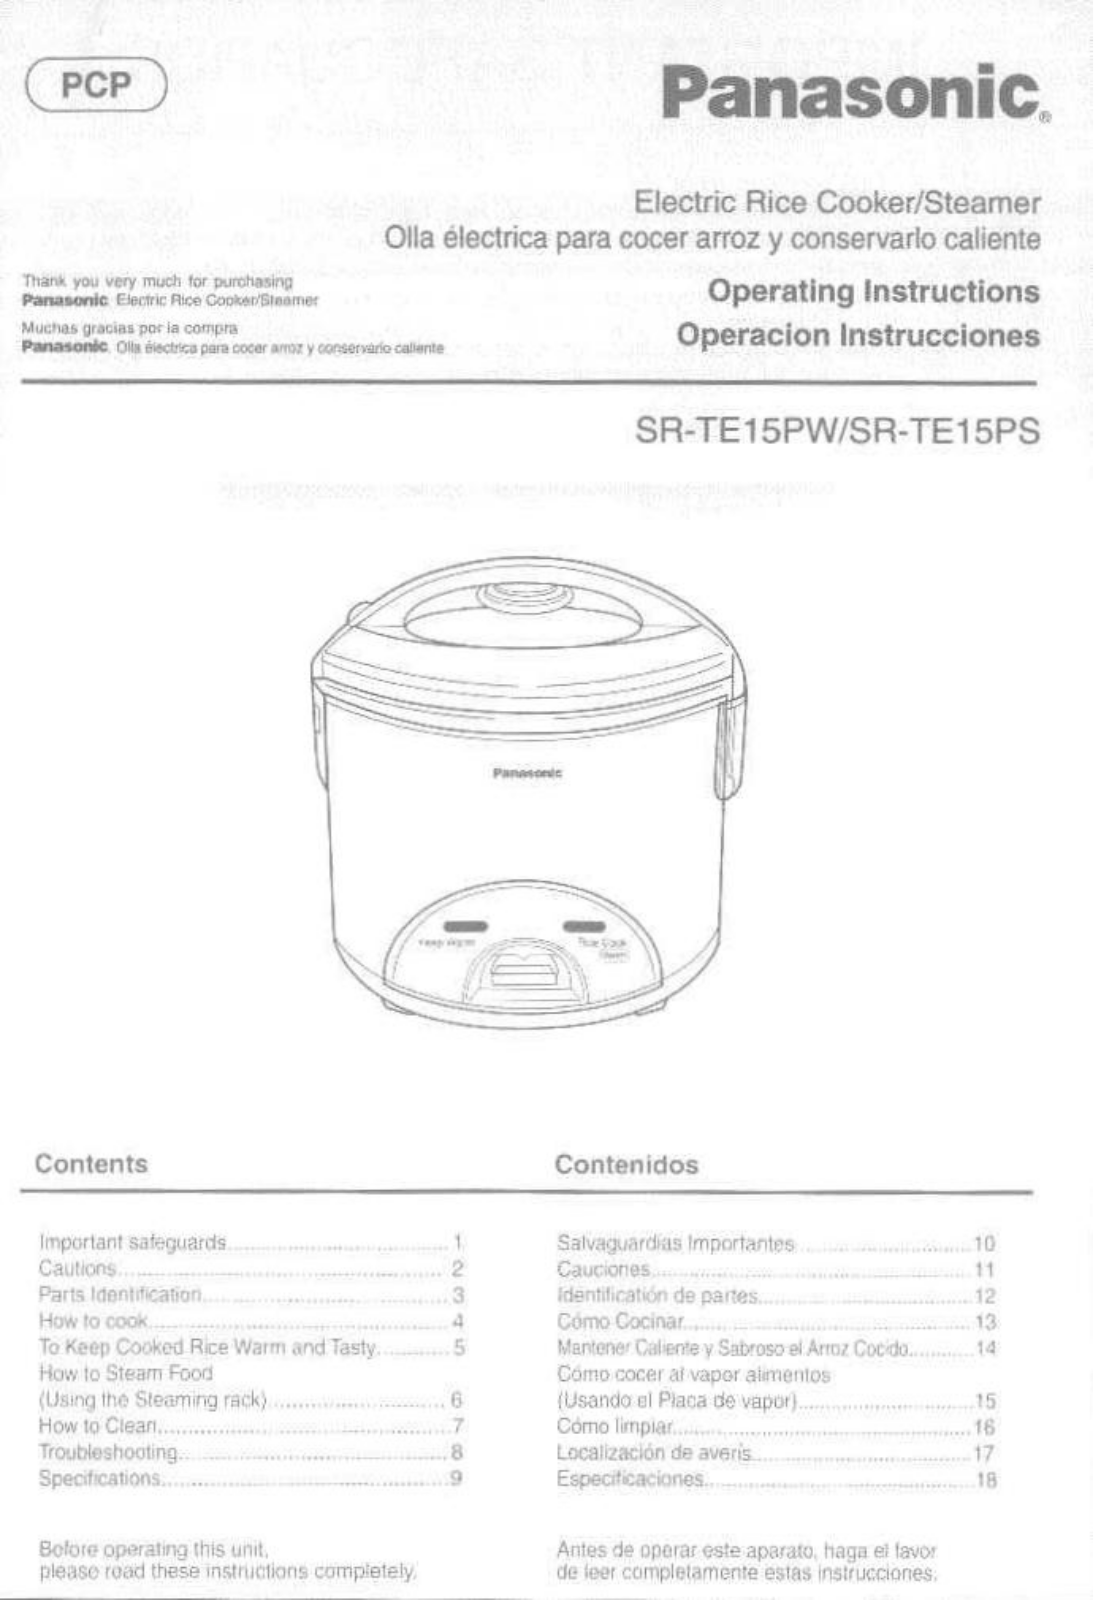 Panasonic Sr-te15ps, Sr-te15pw Owner's Manual